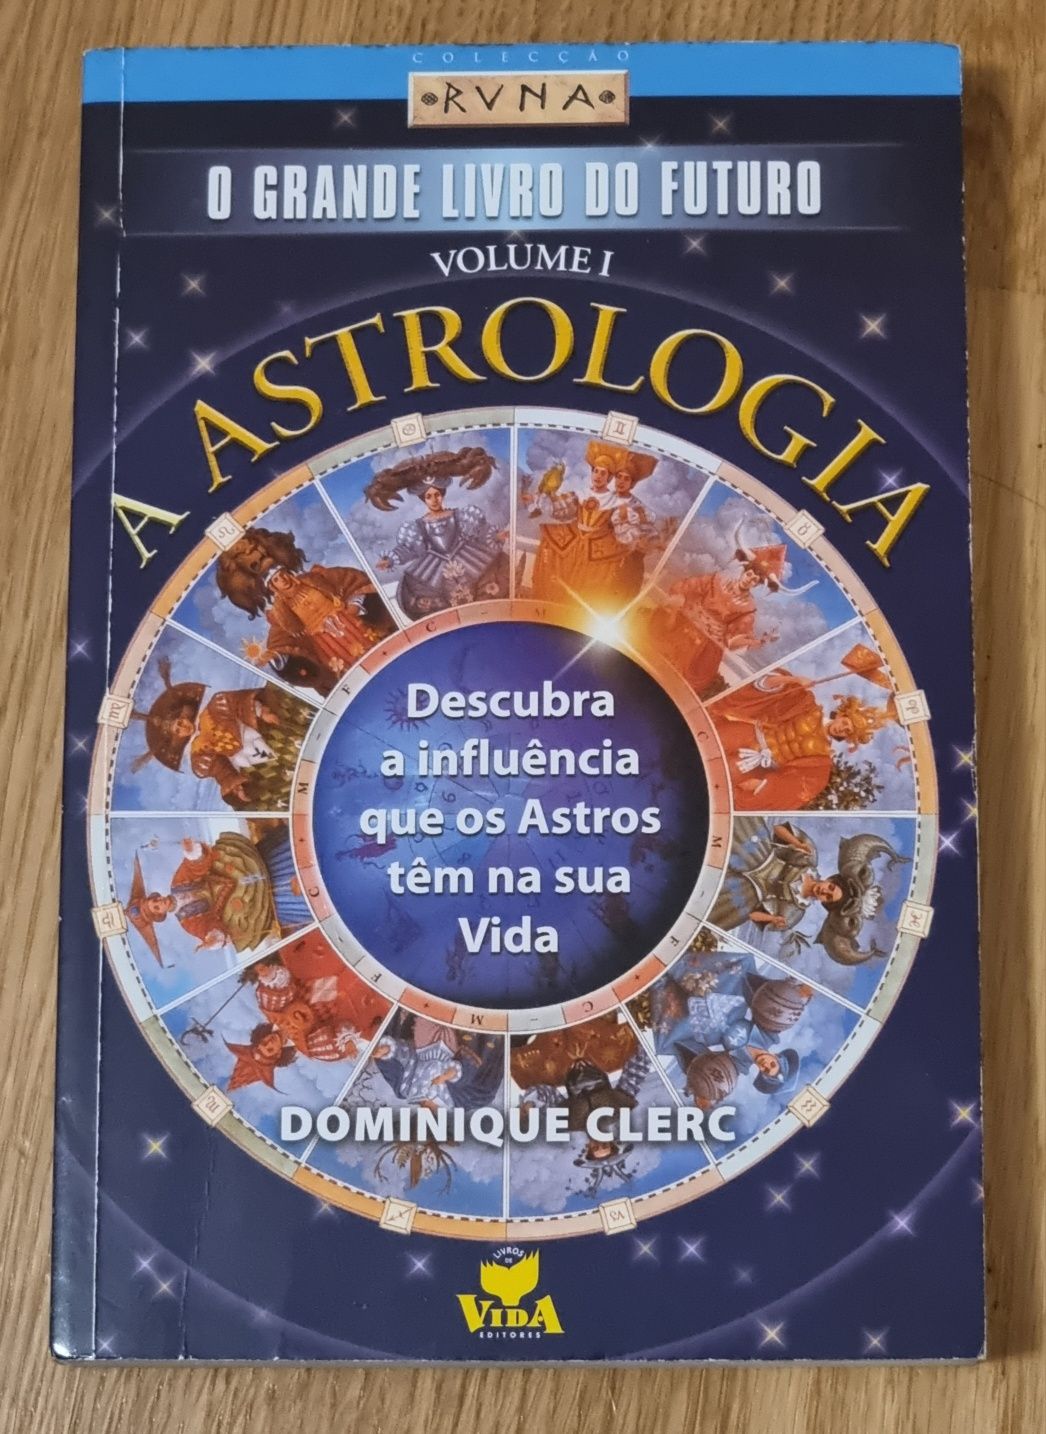 O Grande Livro do Futuro - A Astrologia - Volume I de Dominique Clerc